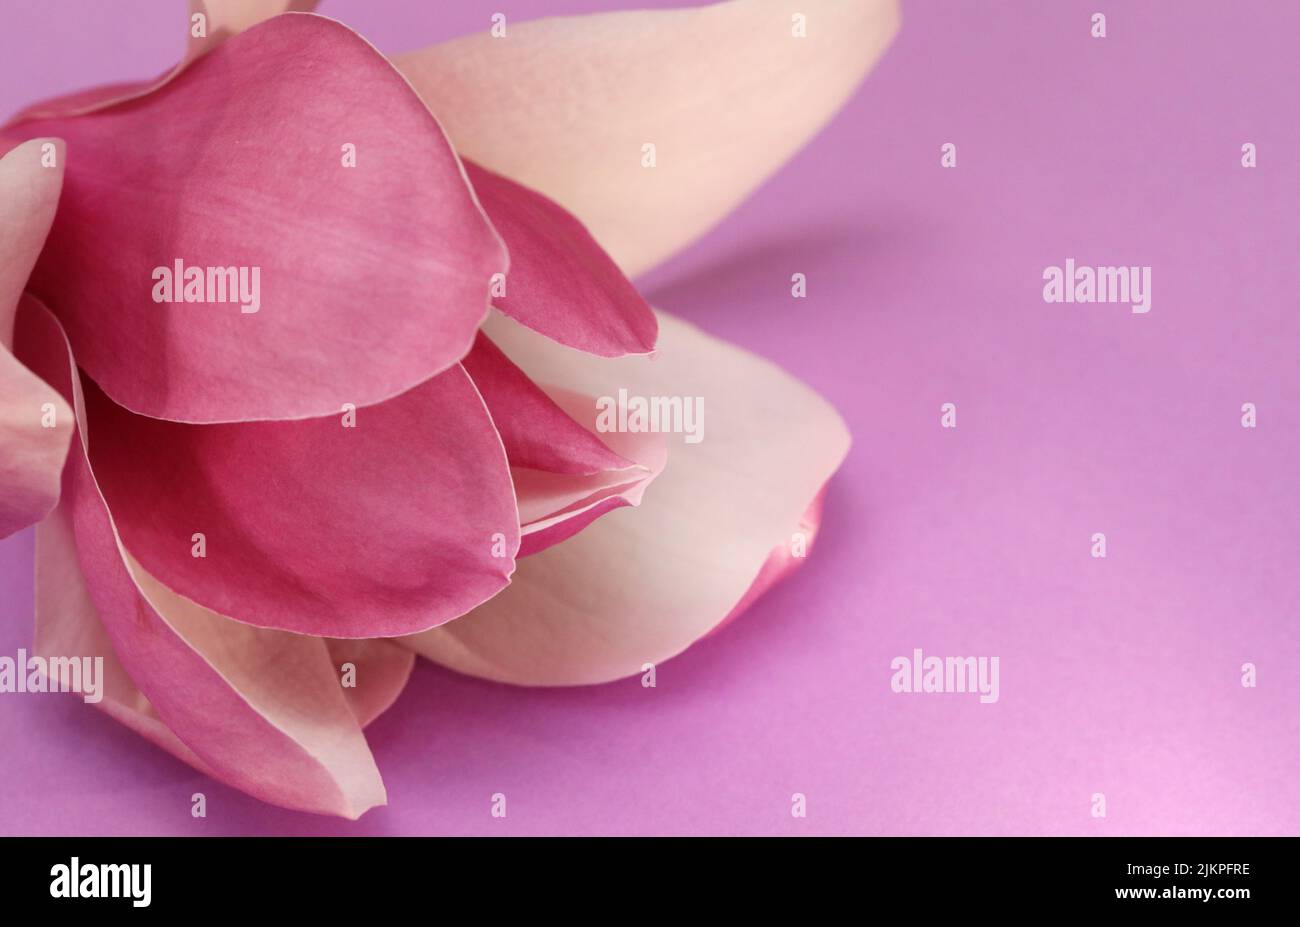 Un superbe gros plan d'une fleur rose et de pétales de Magnolia sur un fond violet et magenta harmonieux. Point focal gauche Banque D'Images